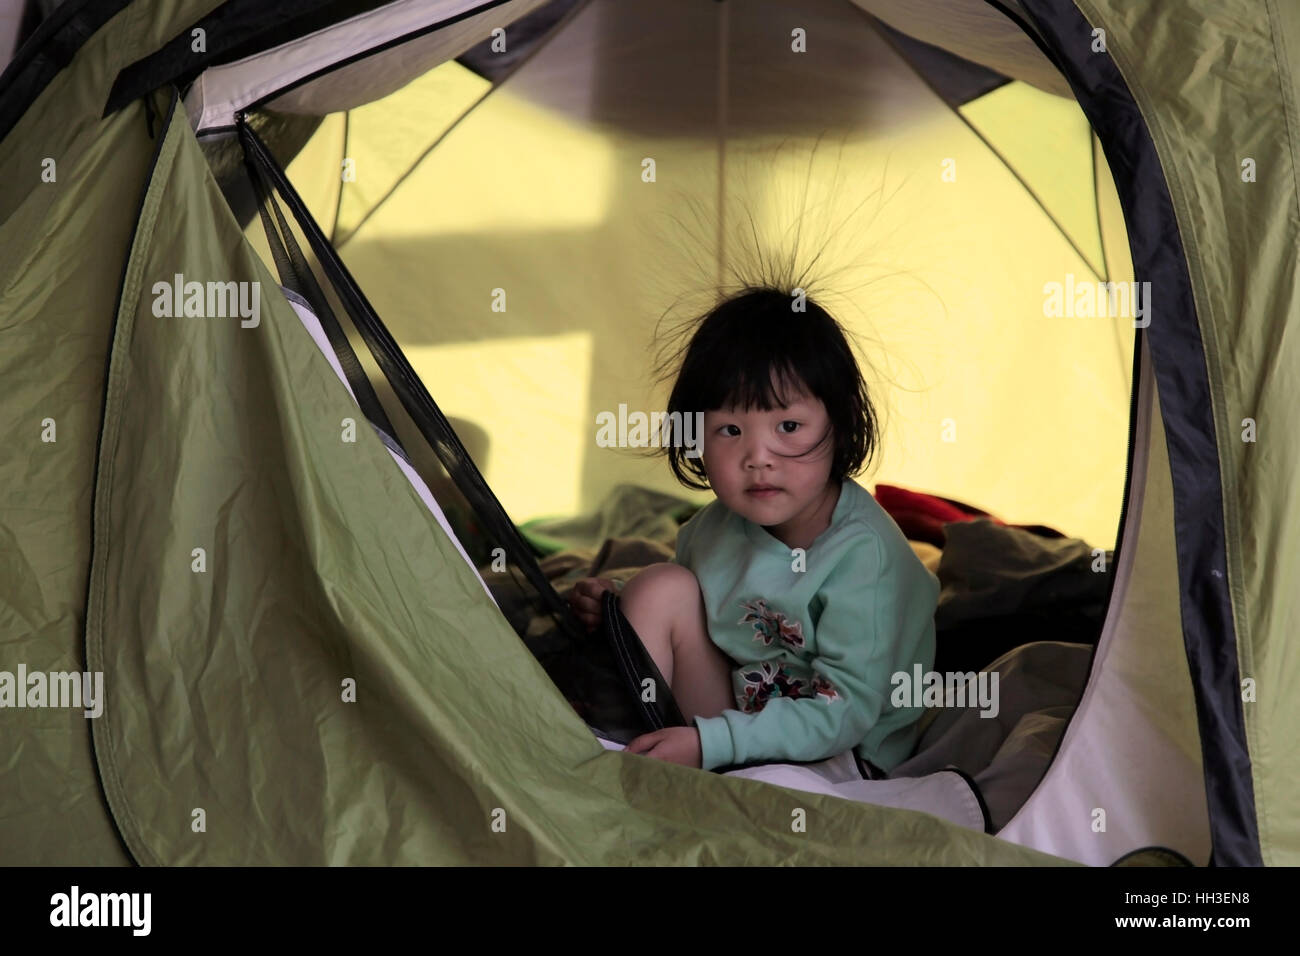 Eine kleine Chinesin mit einige Haare stehen aufgrund von statischer Elektrizität spielt in einem Zelt während einer Reise mit der Familie camping in China. Stockfoto